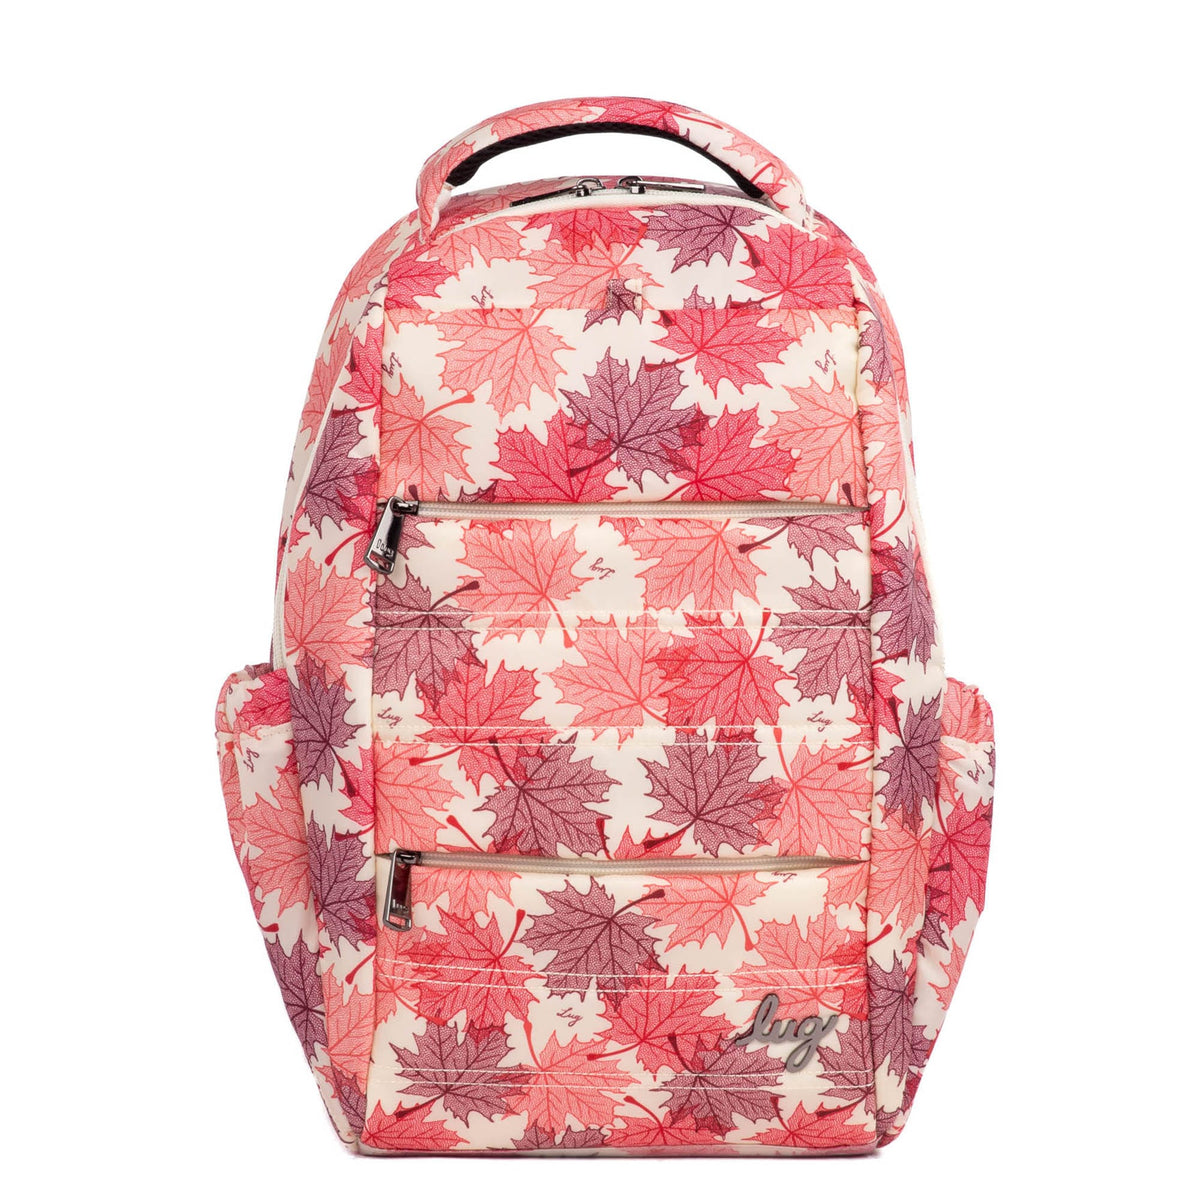 Hopper Backpack